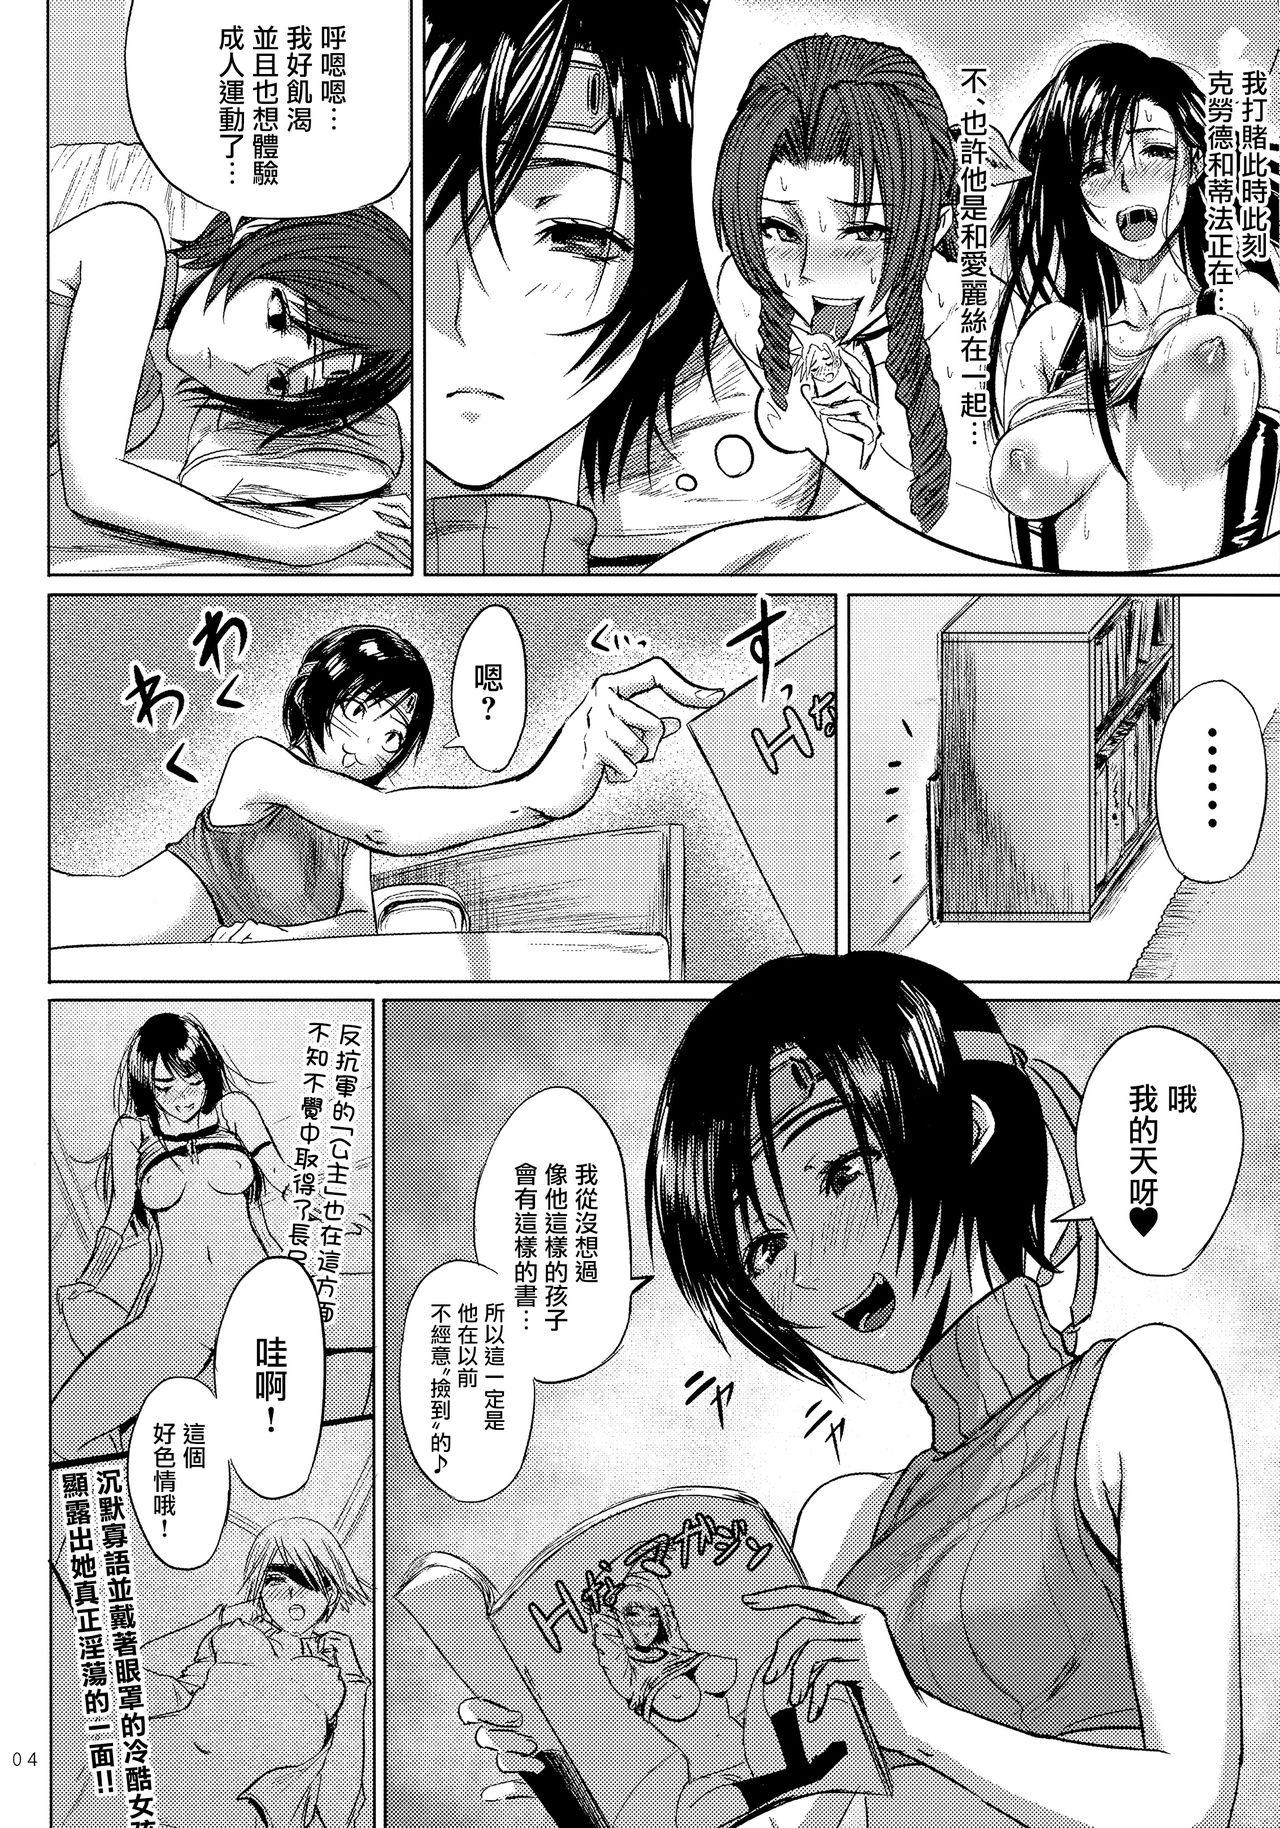 Bathroom Shinobi no Musume wa Ijiritai Zakari 2 - Final fantasy vii Strap On - Page 6